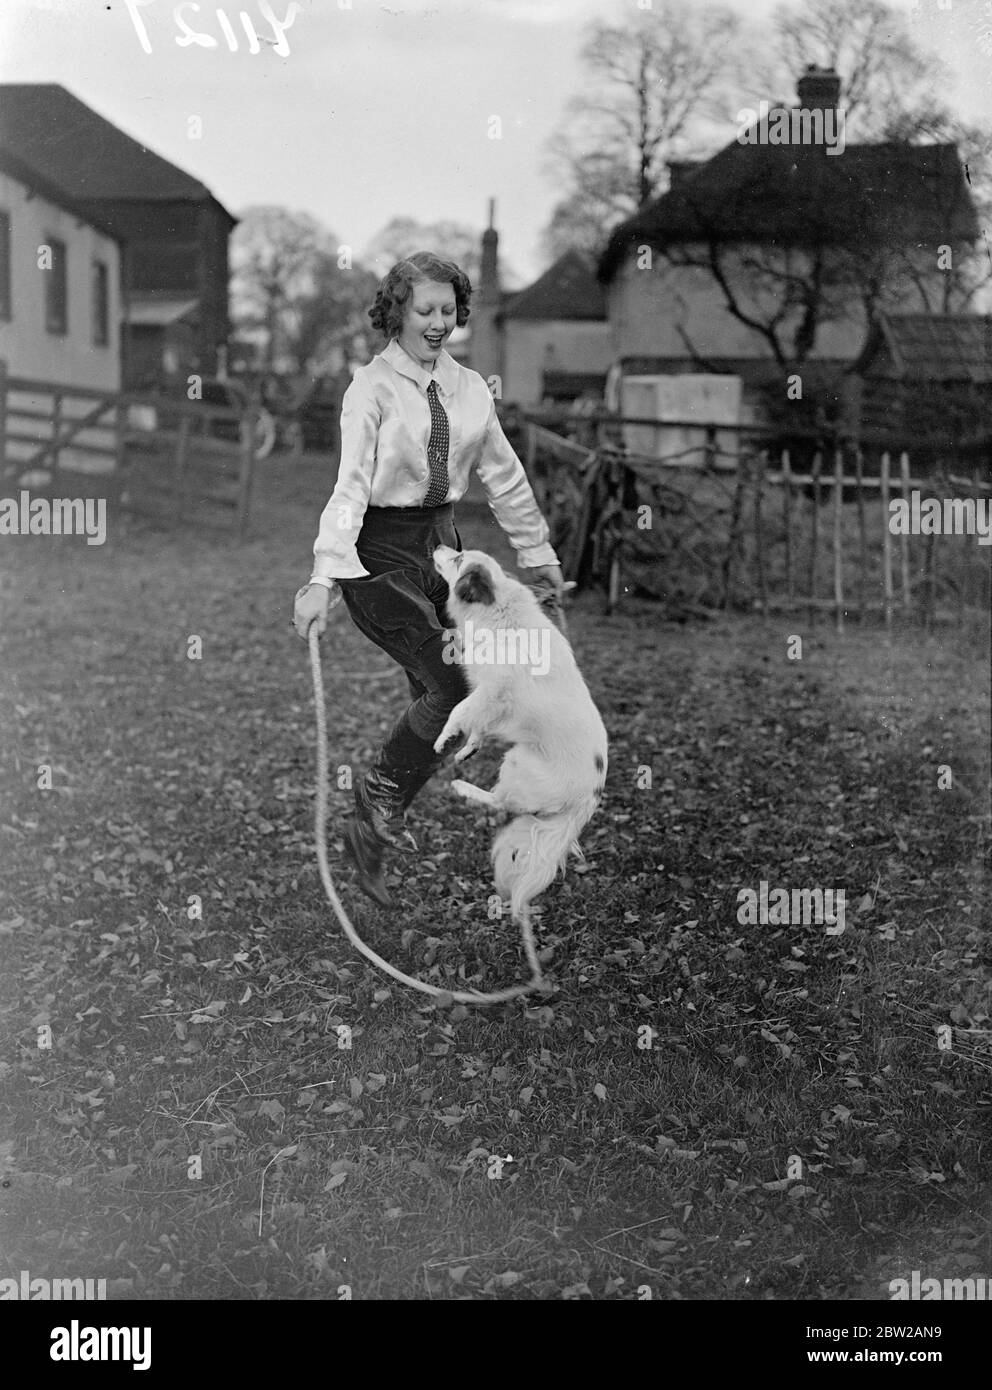 Immer in Trimm für den Zirkusring. Die 16-jährige Olga Astley, eine der jüngsten Tiertrainerinnen Großbritanniens, ist in ihrem Ongar (Essex)-Viertel beschäftigt, um ihren Shetland-Ponys beizubringen und Hunden ihre neuen Acts für die Weihnachtsvorstellung und den Zirkus aufzuführen. Viele von Olga's Tiere erscheinen in Handlungen im ganzen Land. Foto zeigt Olga Astley 'Skippy'Wenden Sie sich mit dem Seil zusammen in Ongar. 14. November 1937 Stockfoto